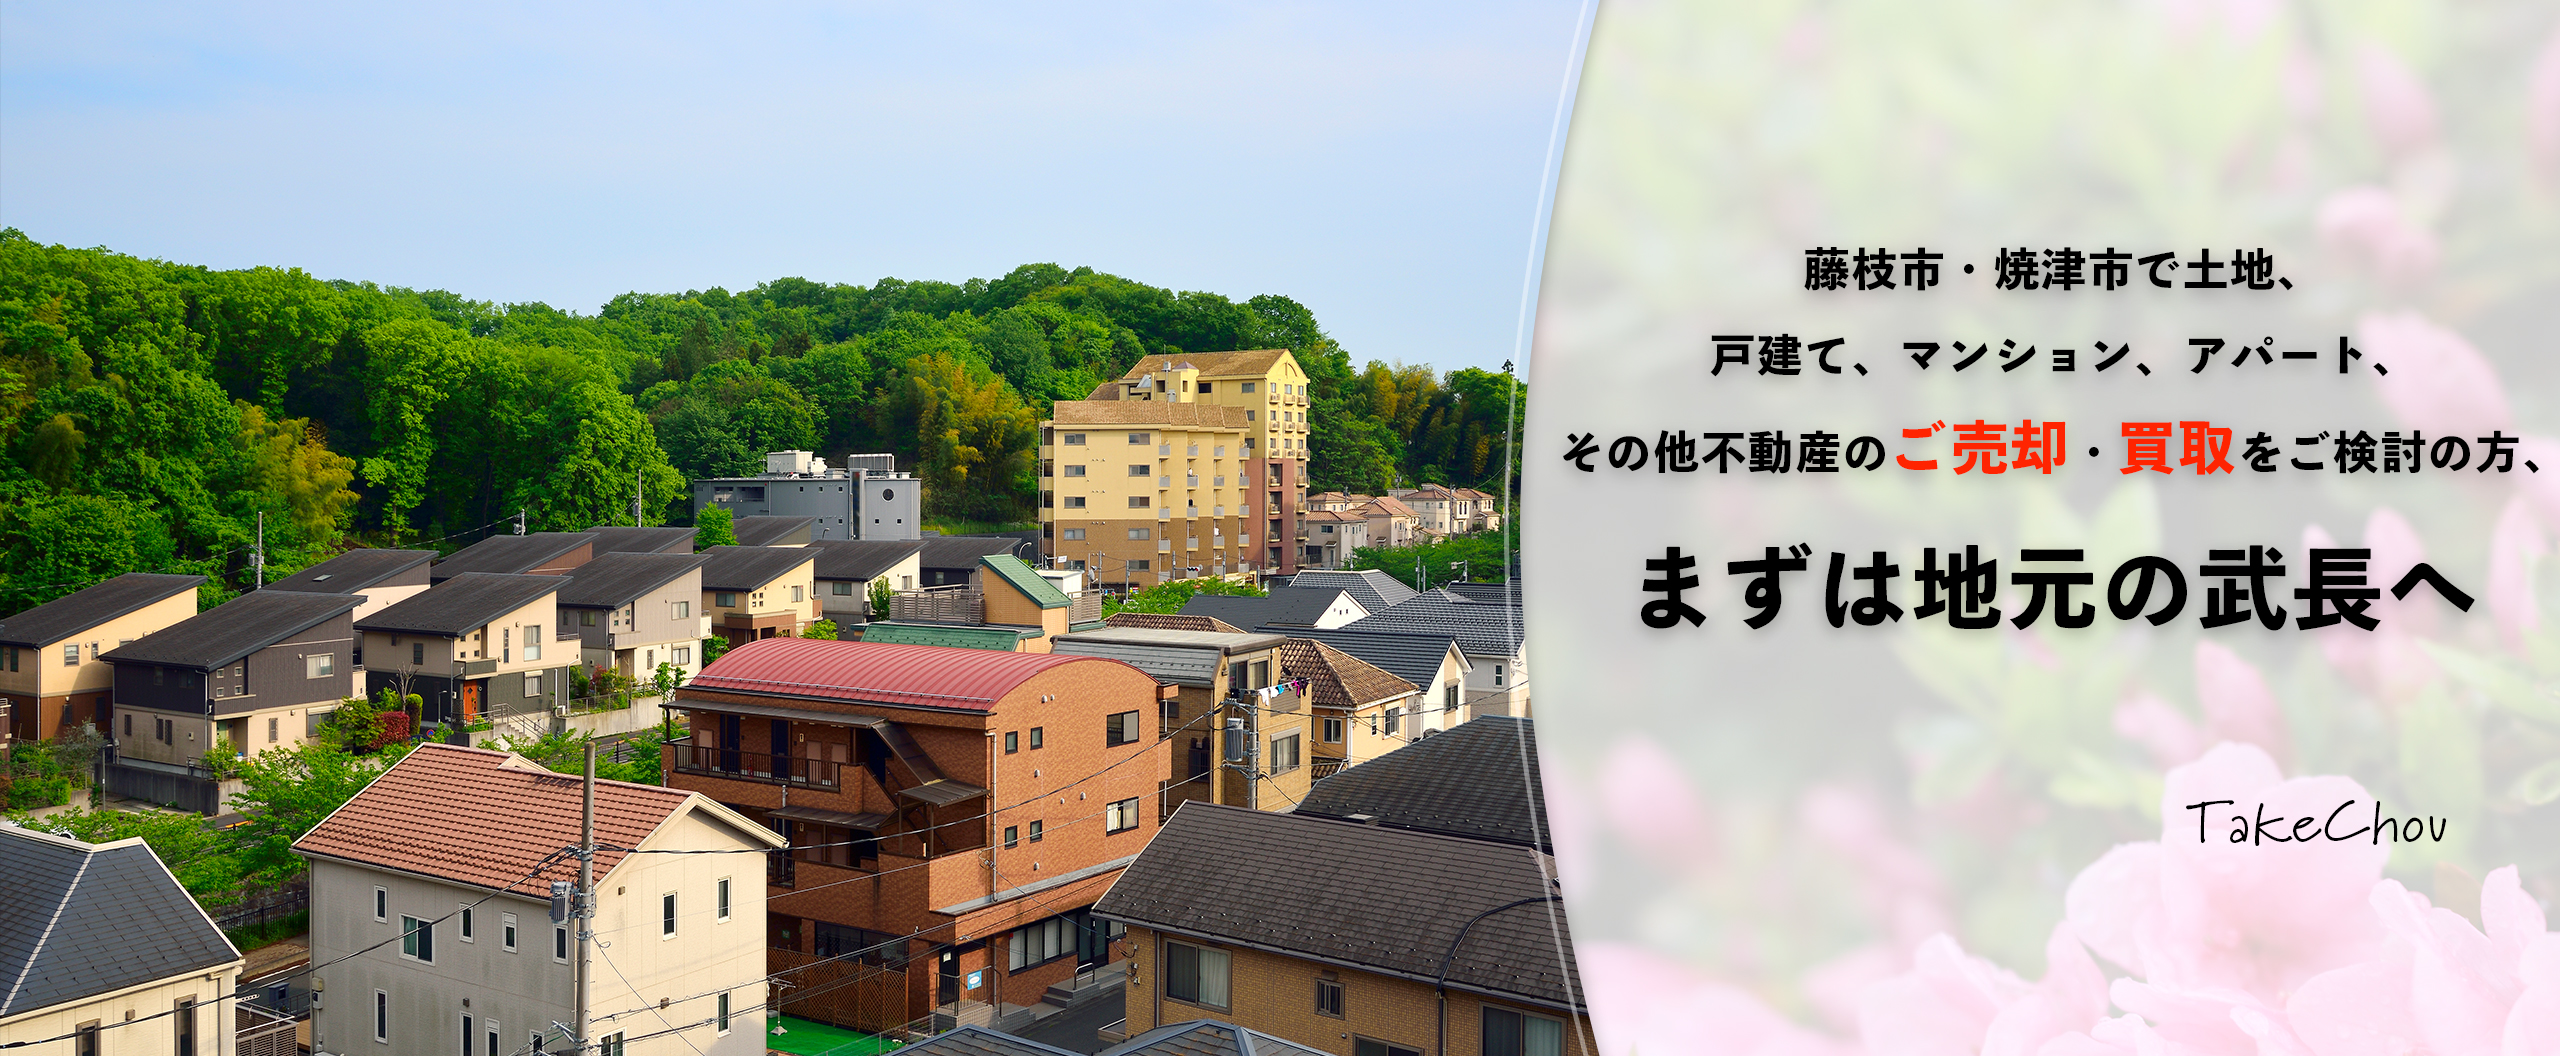 藤枝市・焼津市で土地、戸建て、マンション、アパート、その他不動産のご売却・買取をご検討の方、まずは地元の武長へ